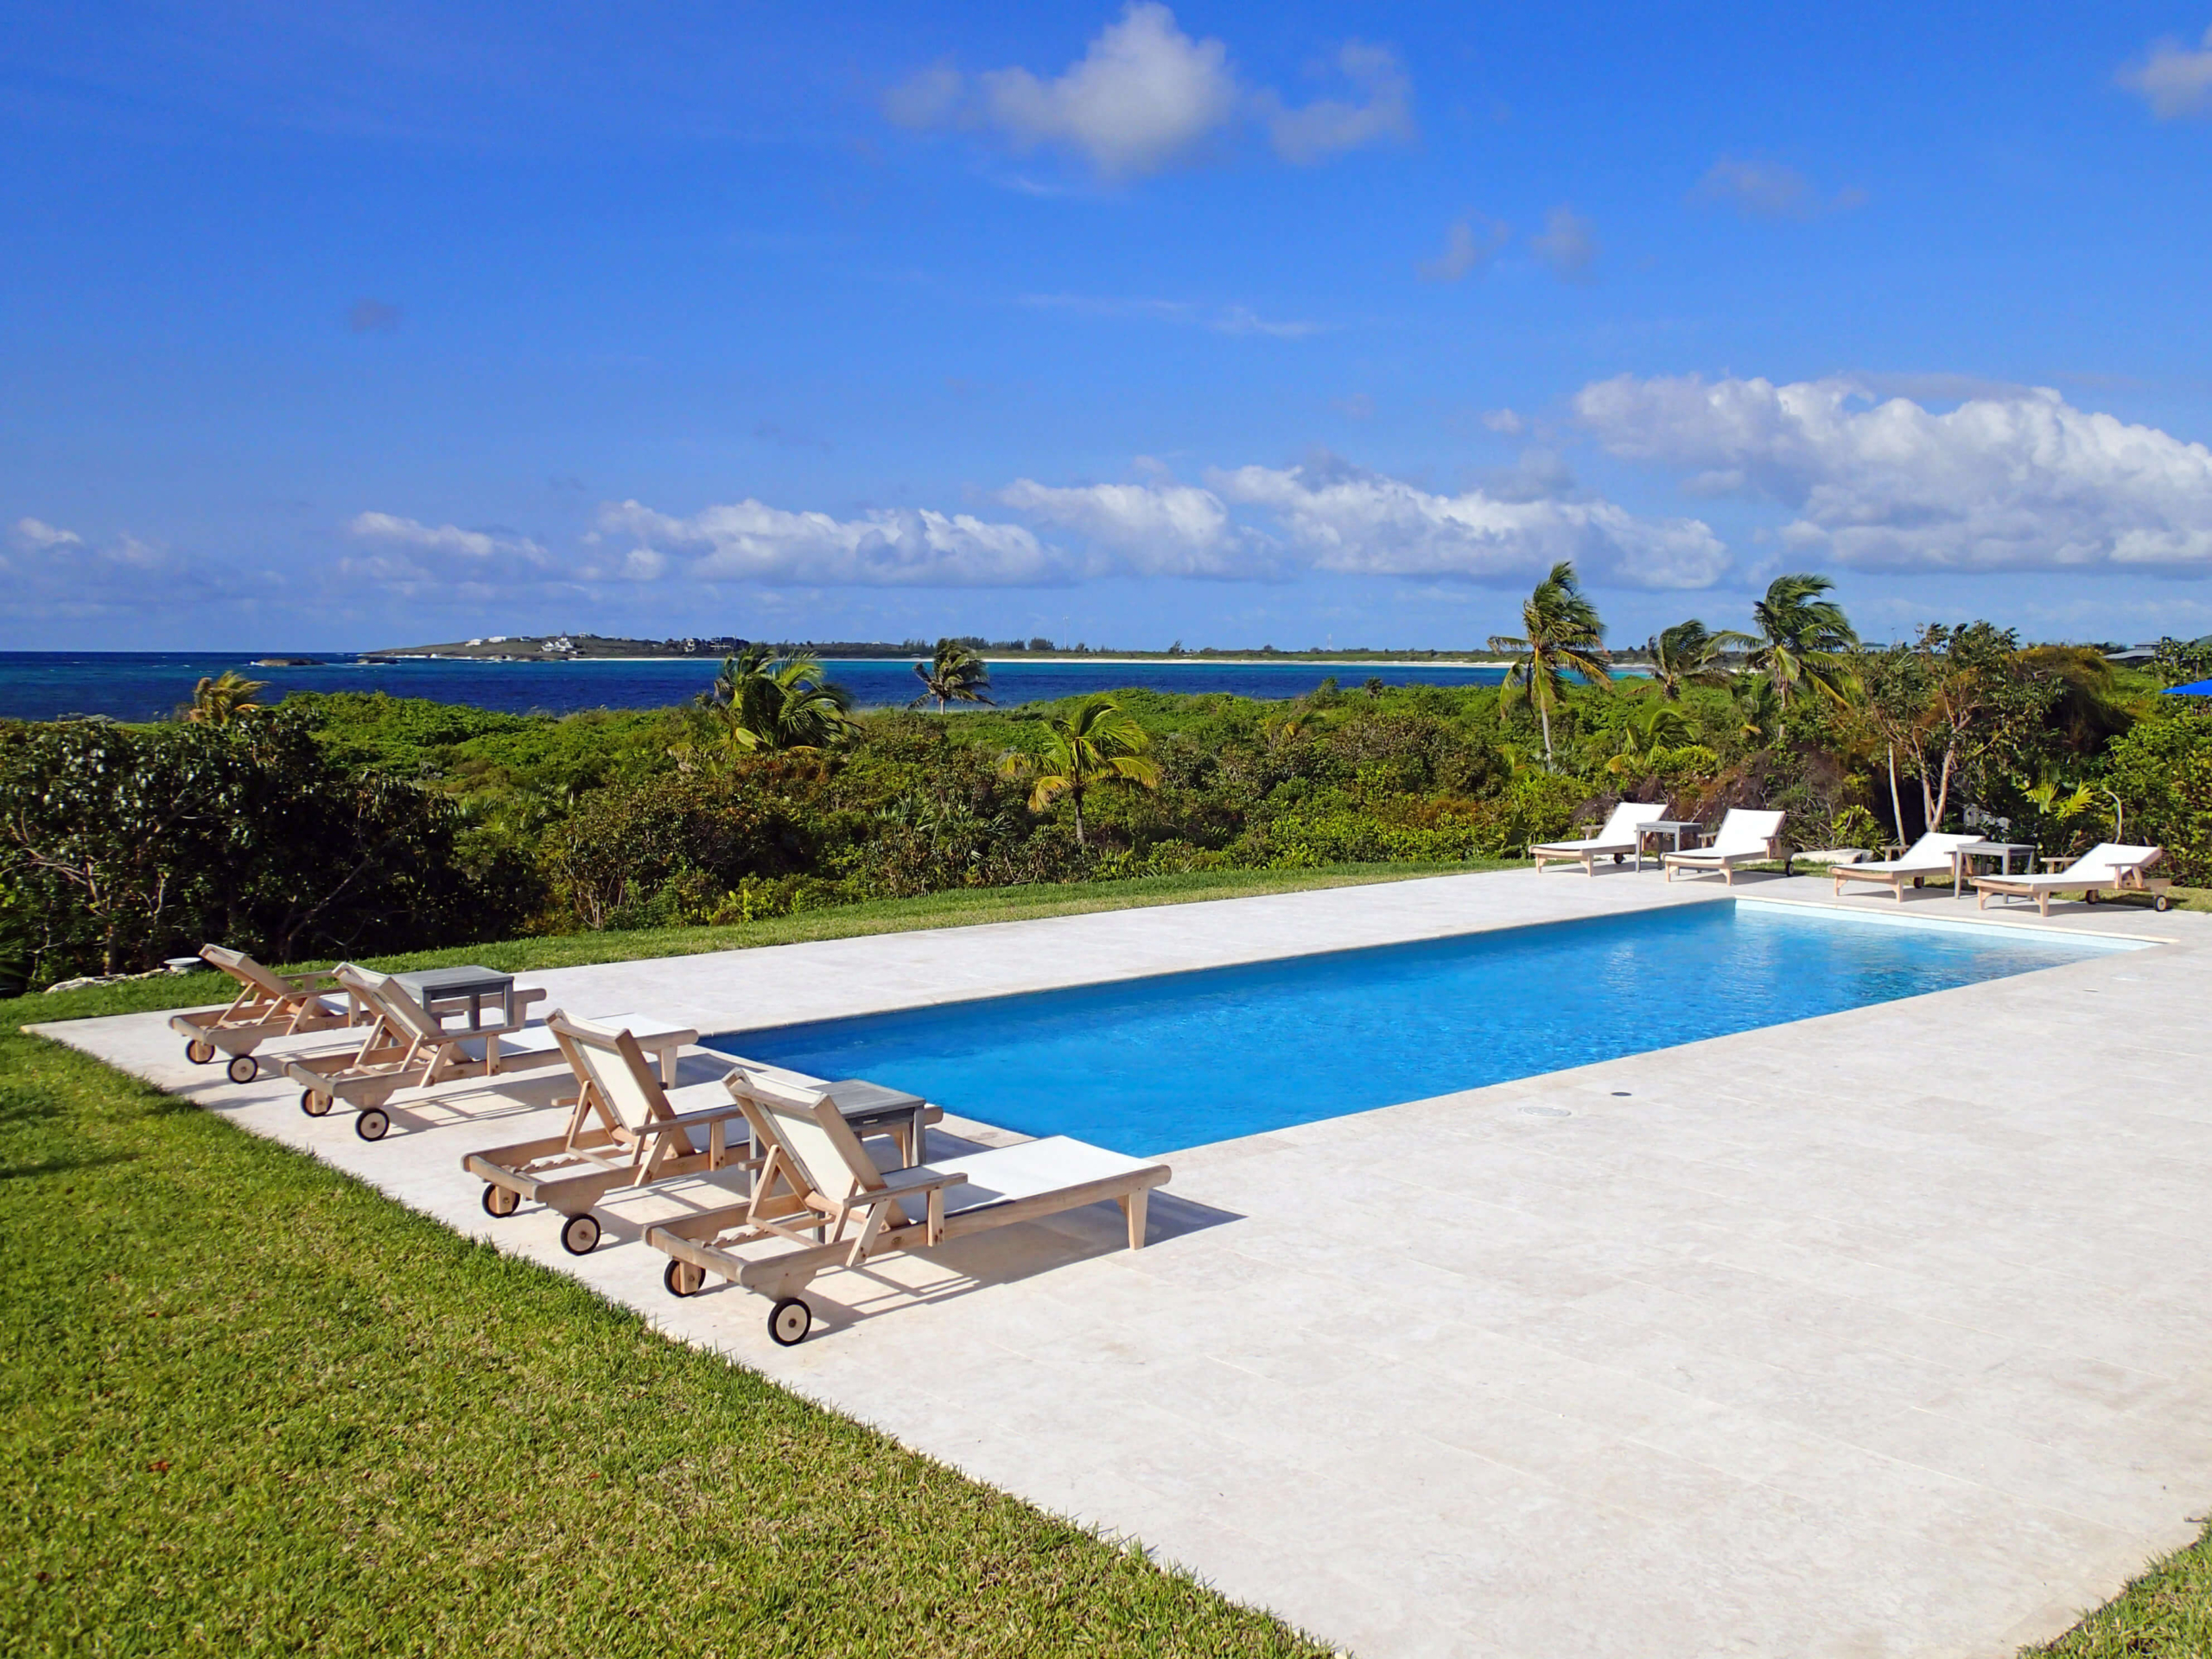 Swimming pool in the Ridge neighborhood in Bahamas